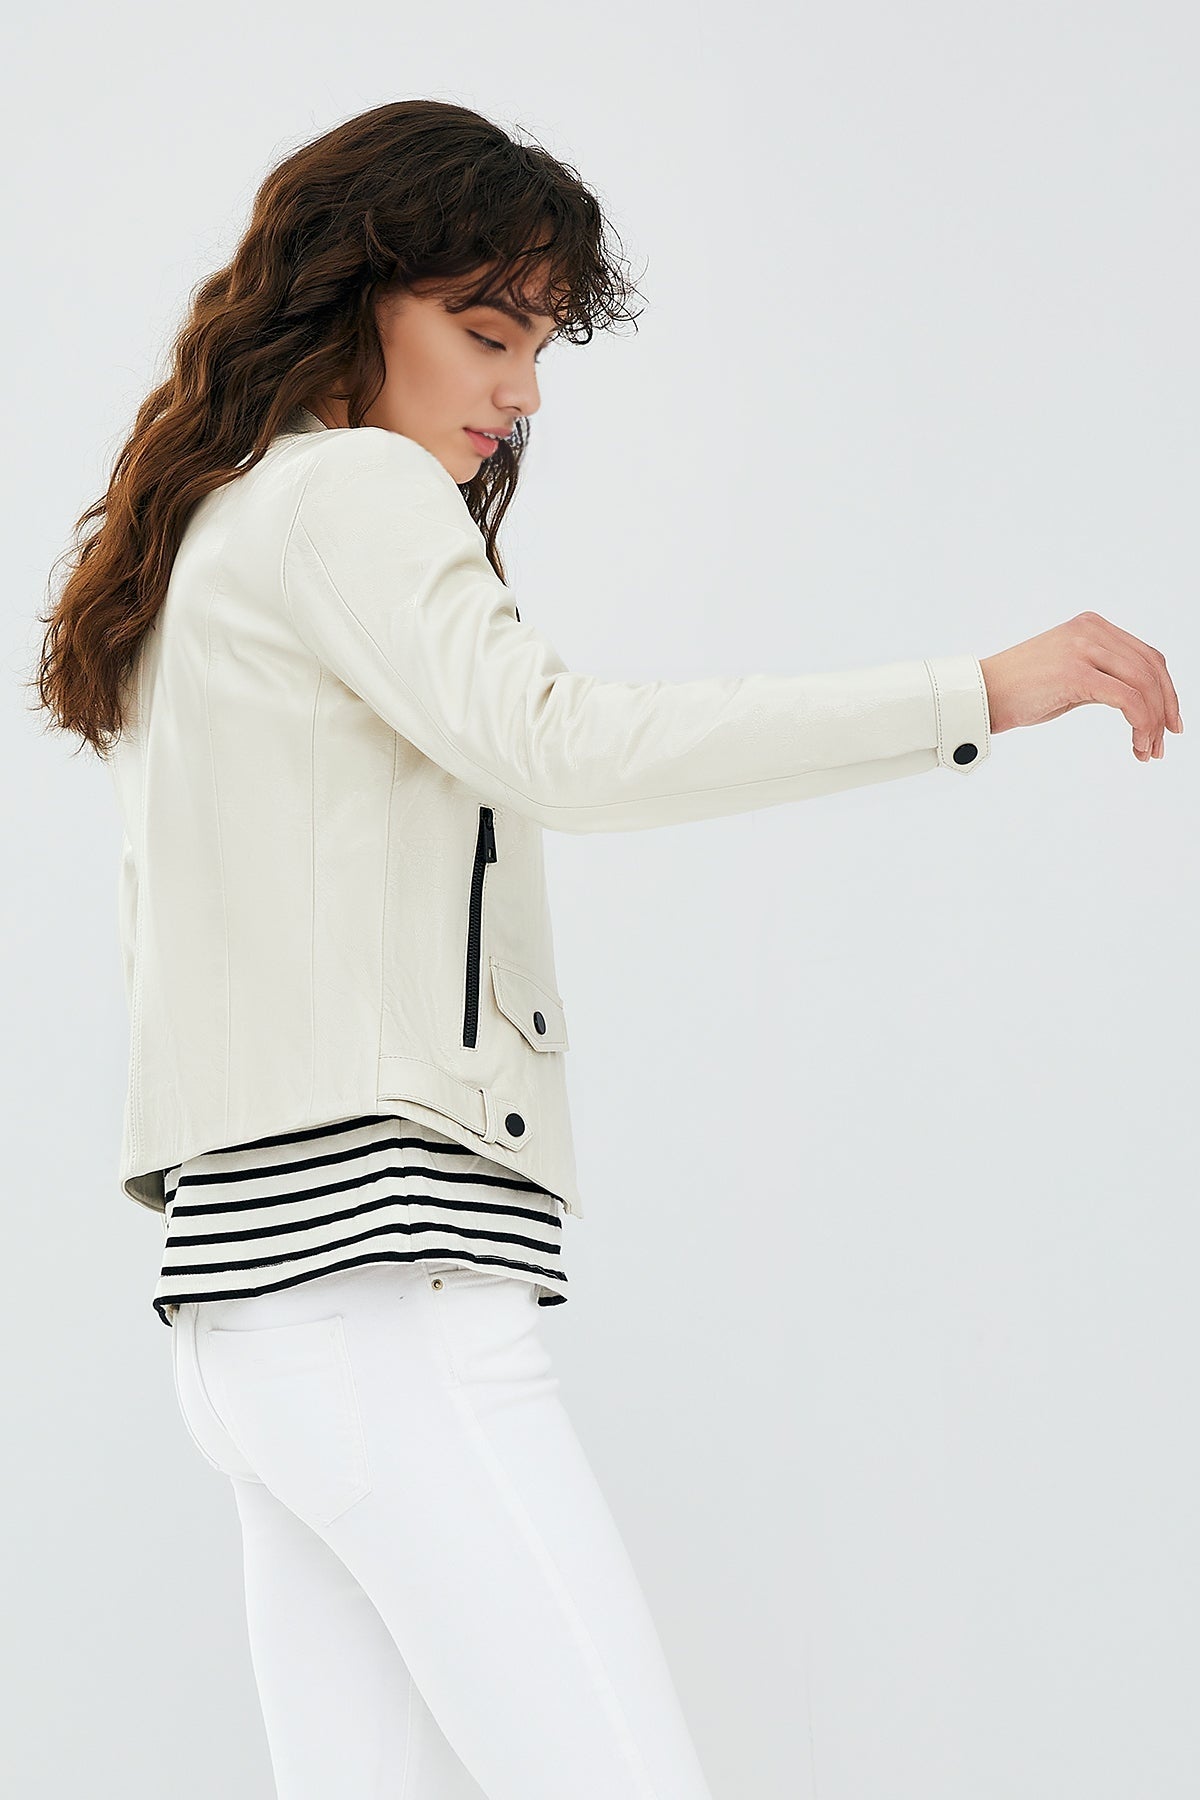 Daphne Women's White Leather Jacket